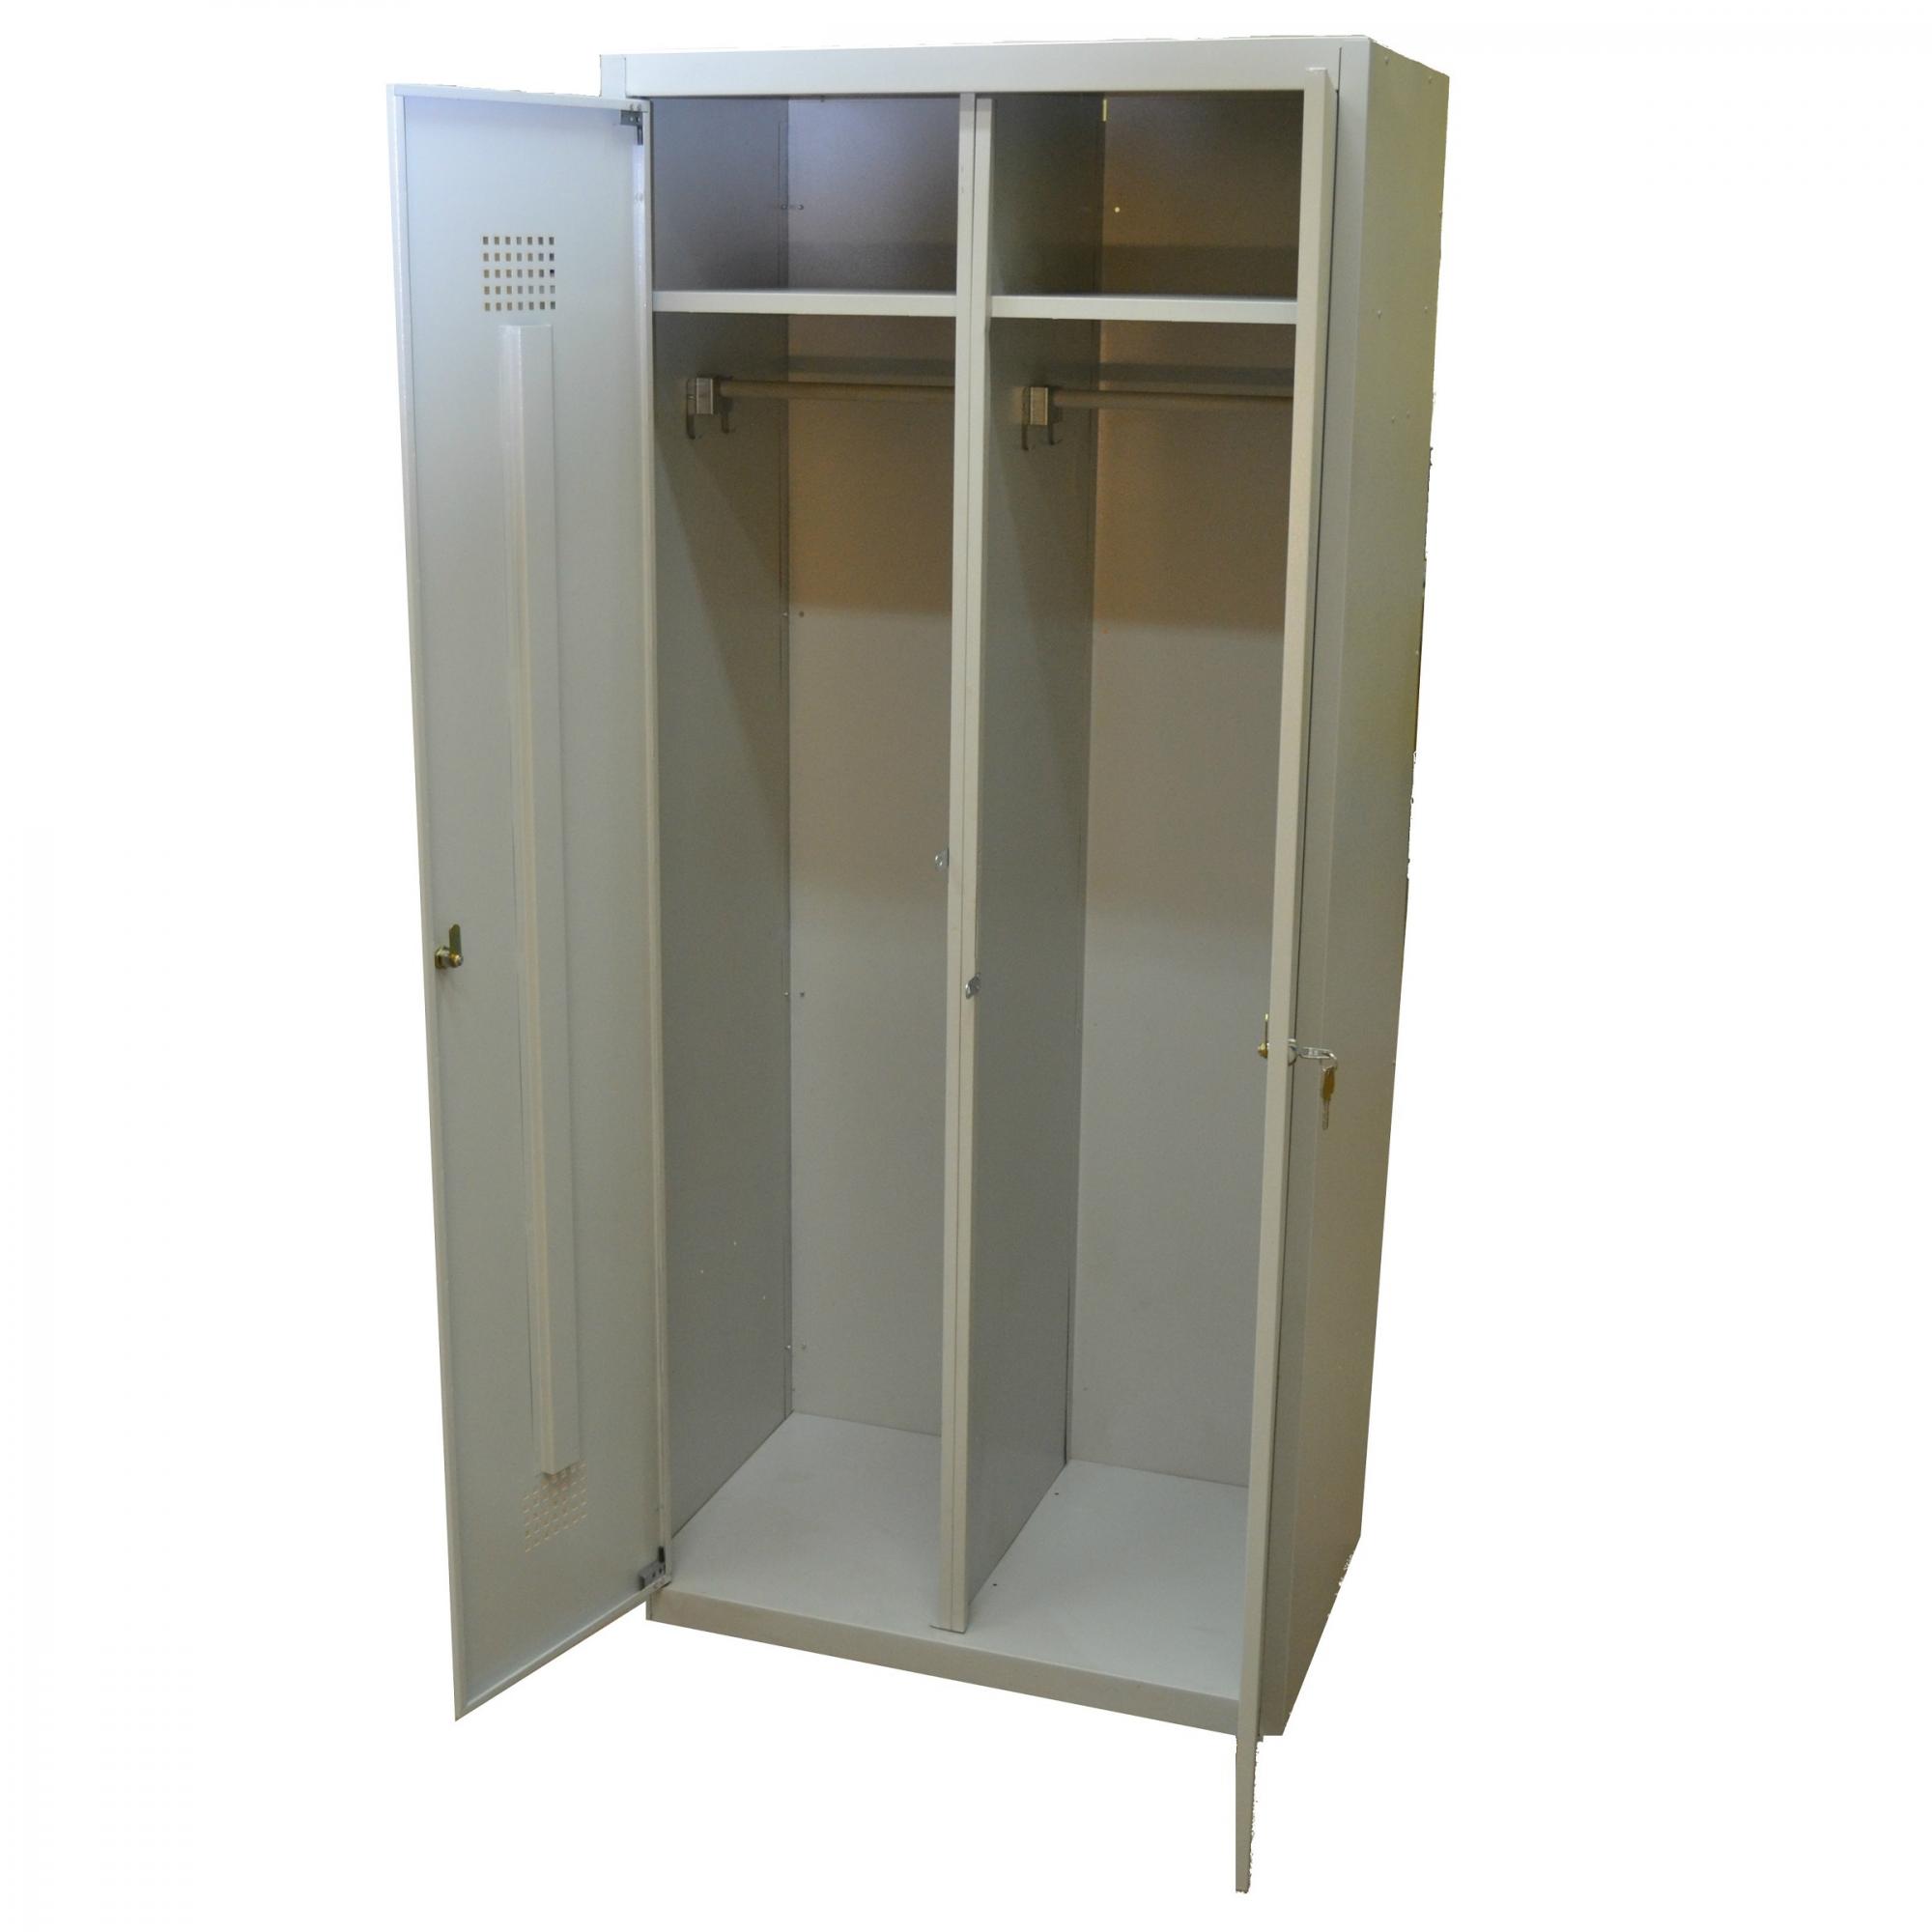 Шкаф для одежды ШГС-1850/500